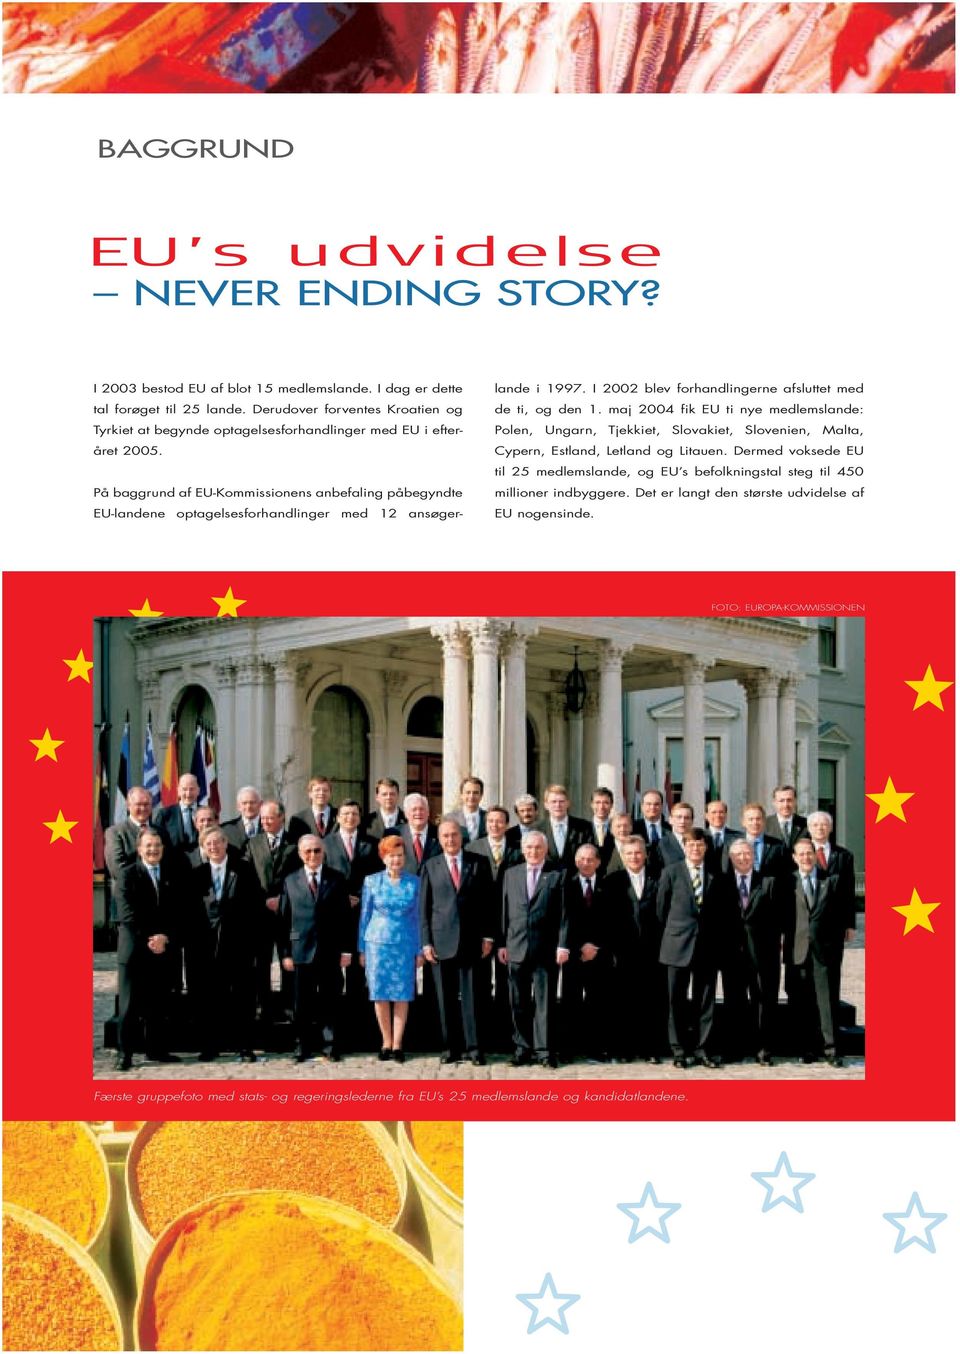 På baggrund af EU-Kommissionens anbefaling påbegyndte EU-landene optagelsesforhandlinger med 12 ansøgerlande i 1997. I 2002 blev forhandlingerne afsluttet med de ti, og den 1.